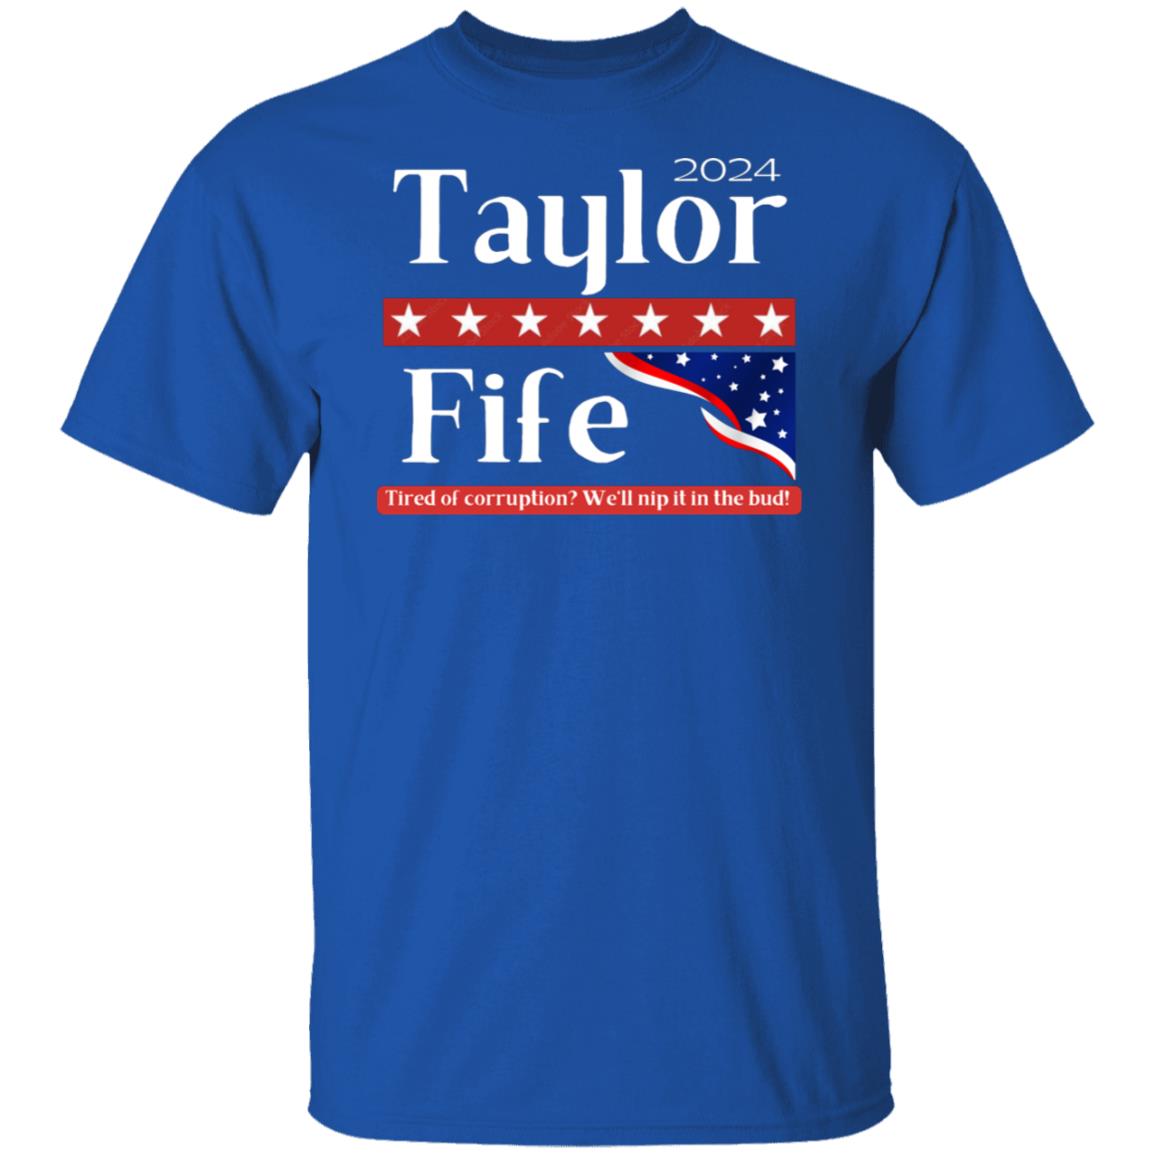 Taylor Fife 2024 T-Shirt